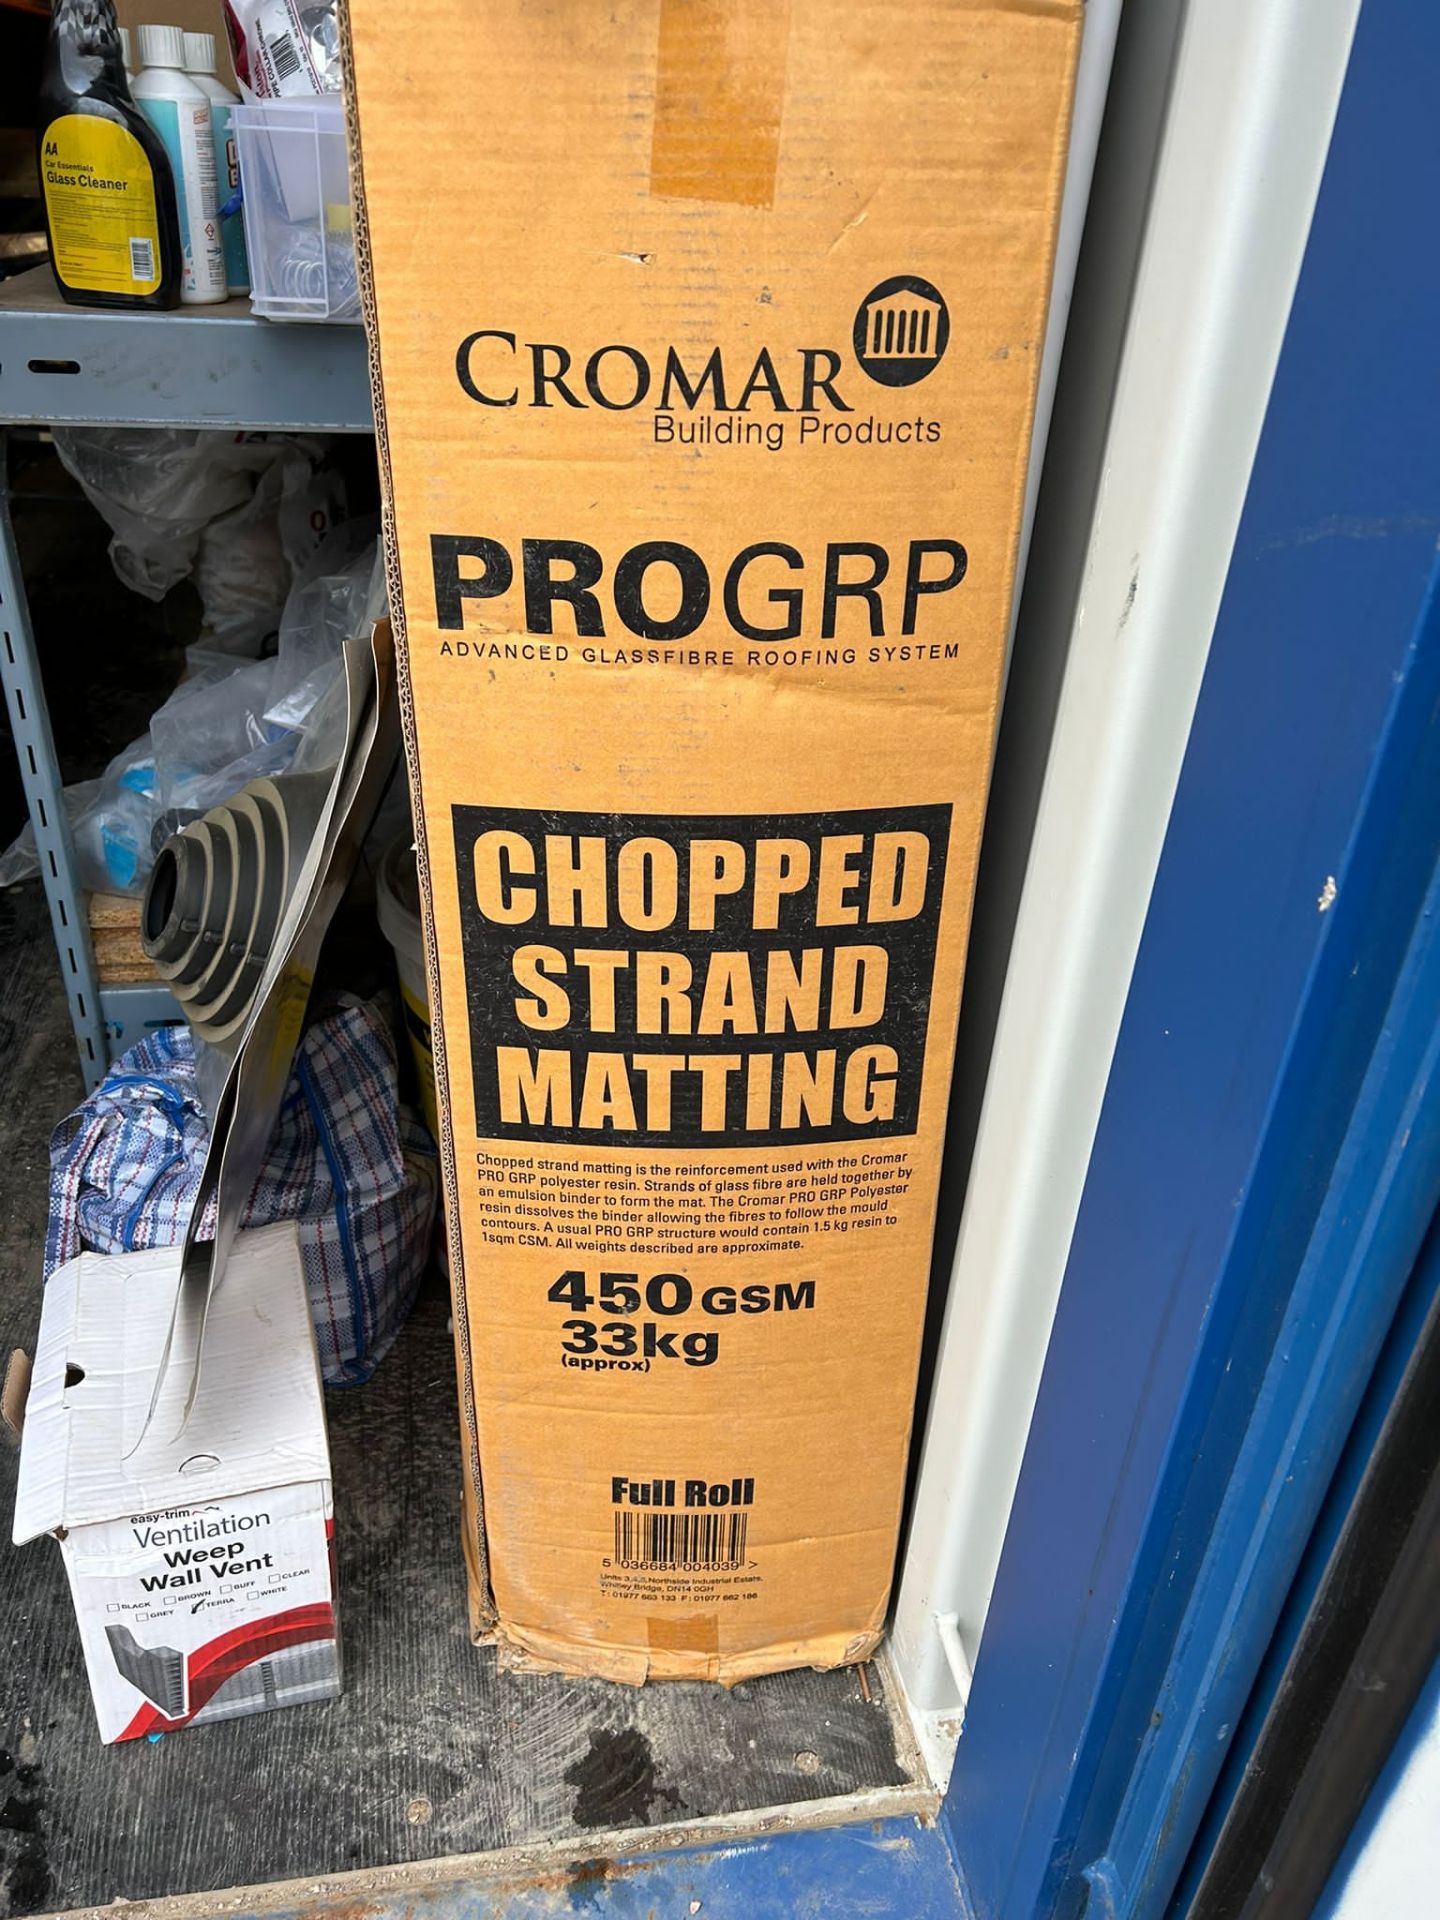 Roll Cromer pro grip matting 450gsm 33kg - Bild 2 aus 4